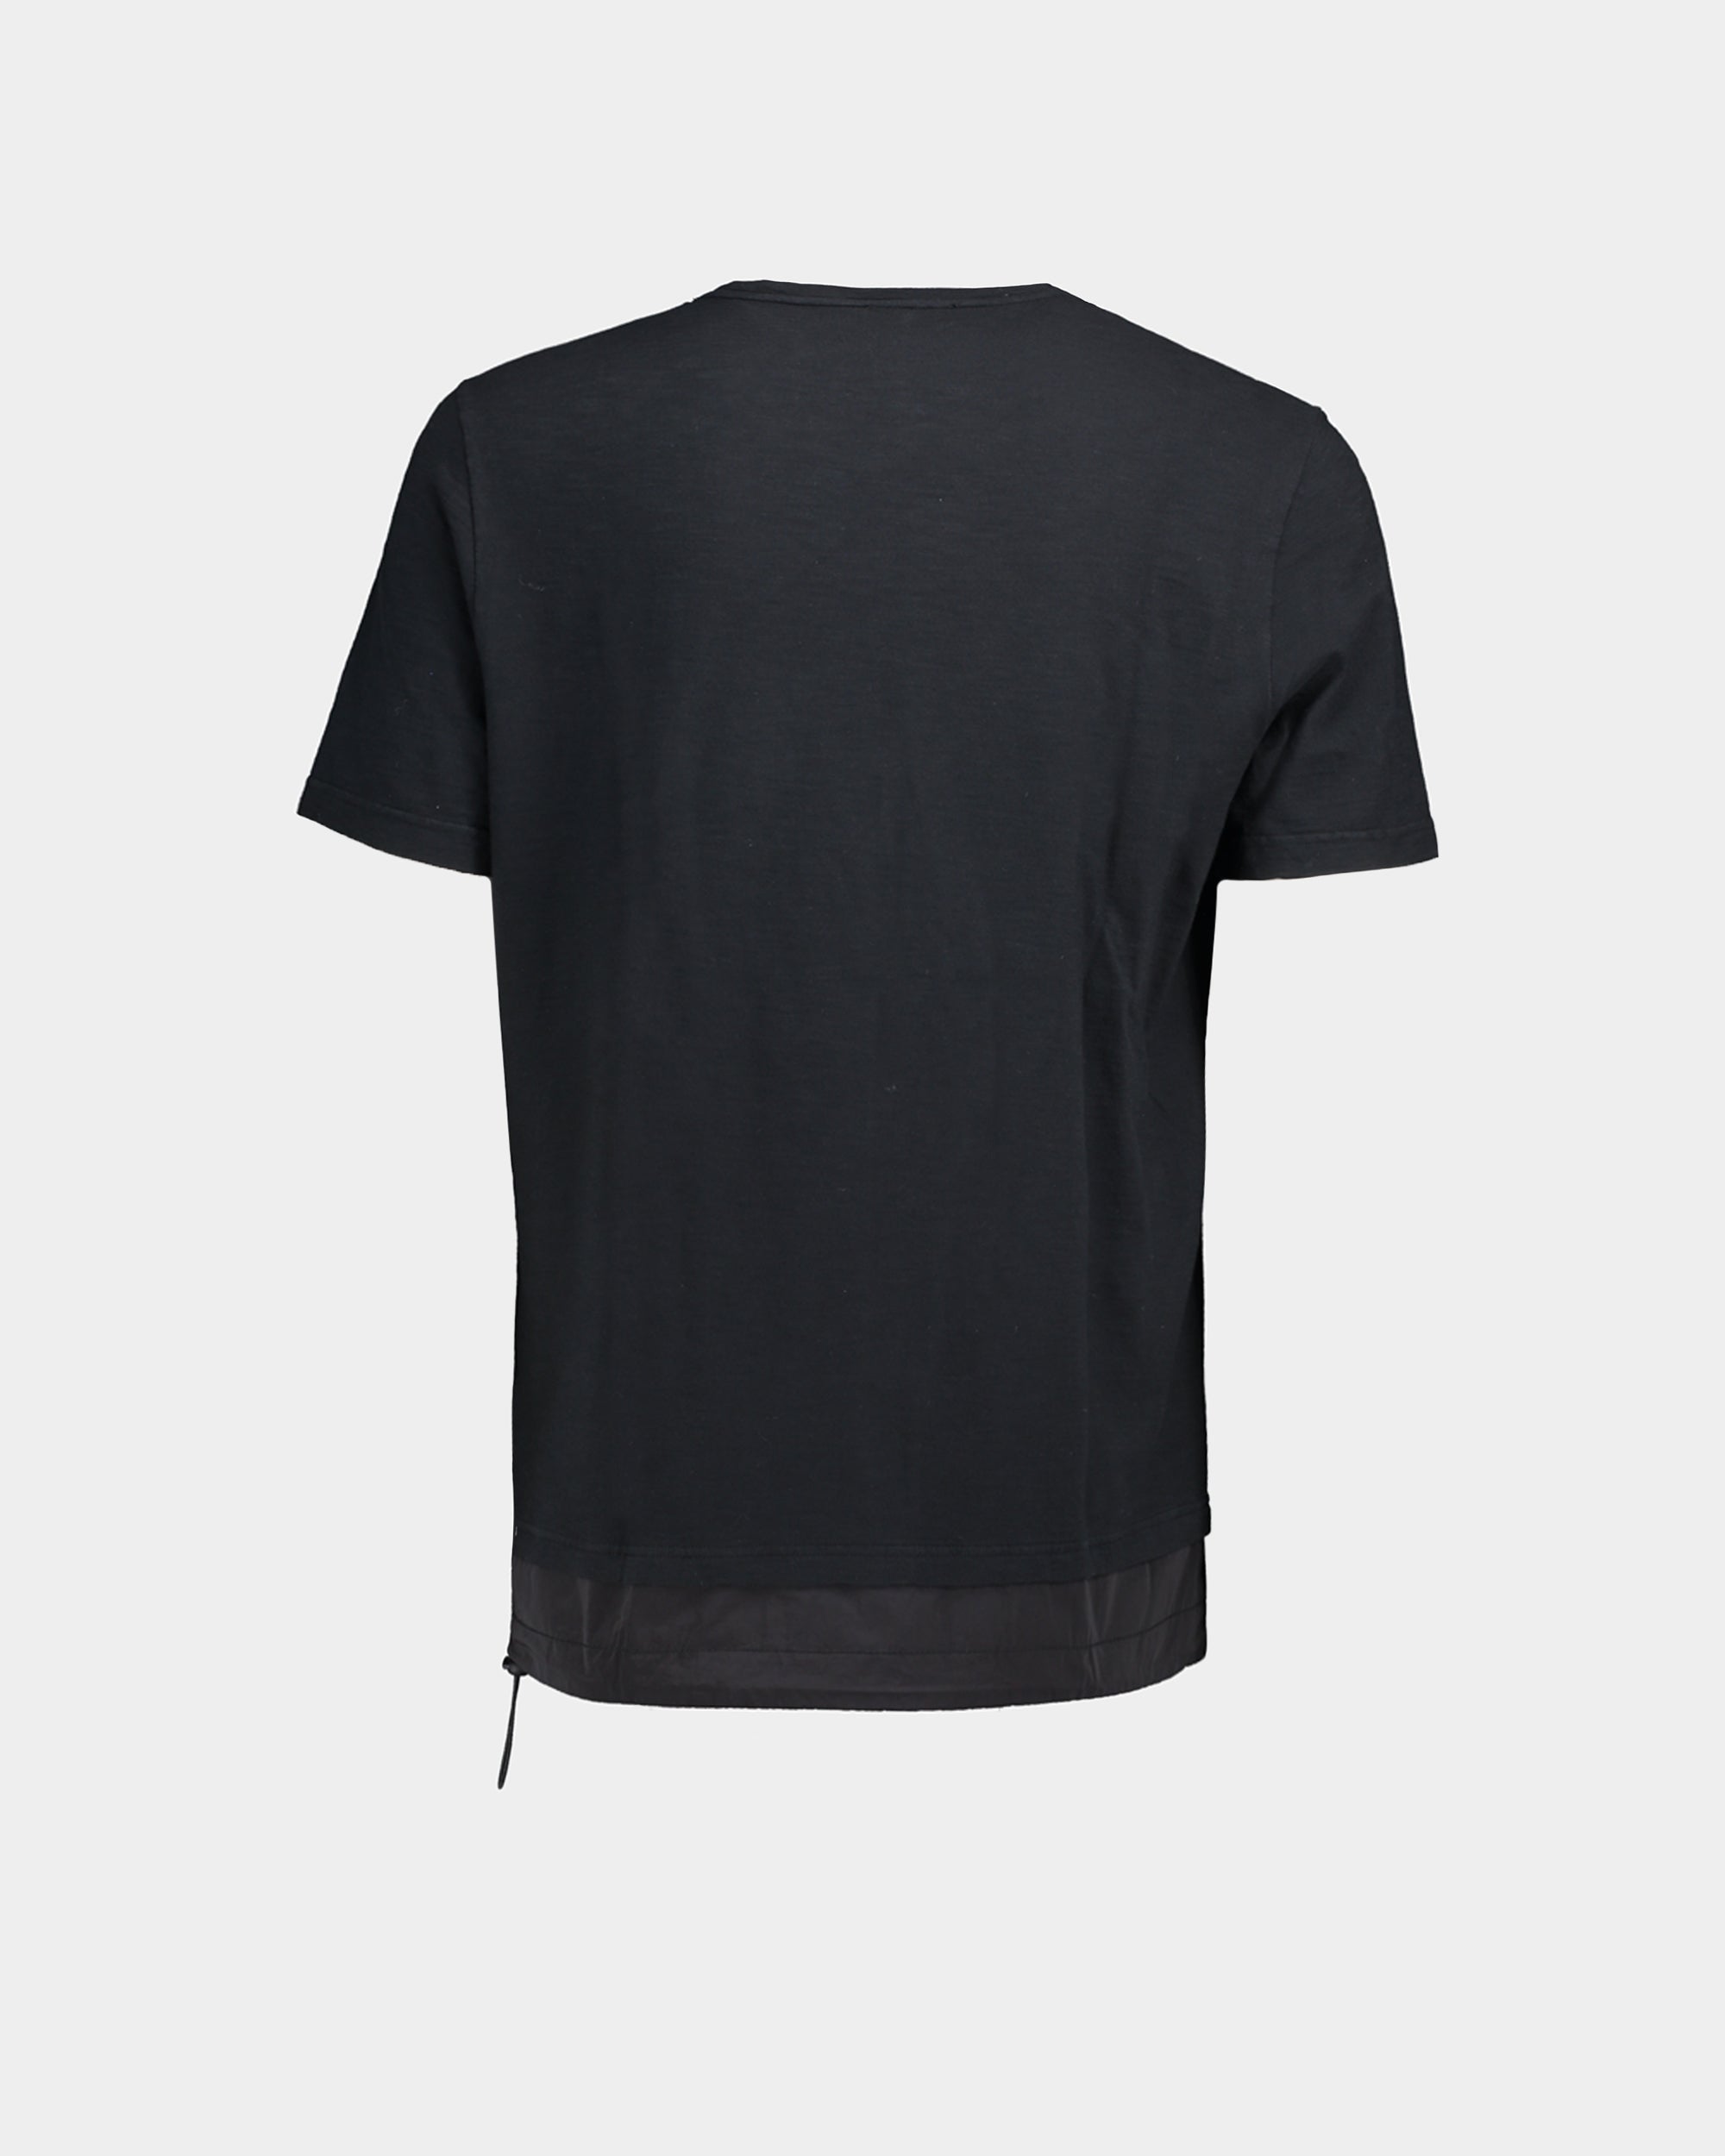 T-shirt jersey cotone fiammato nero